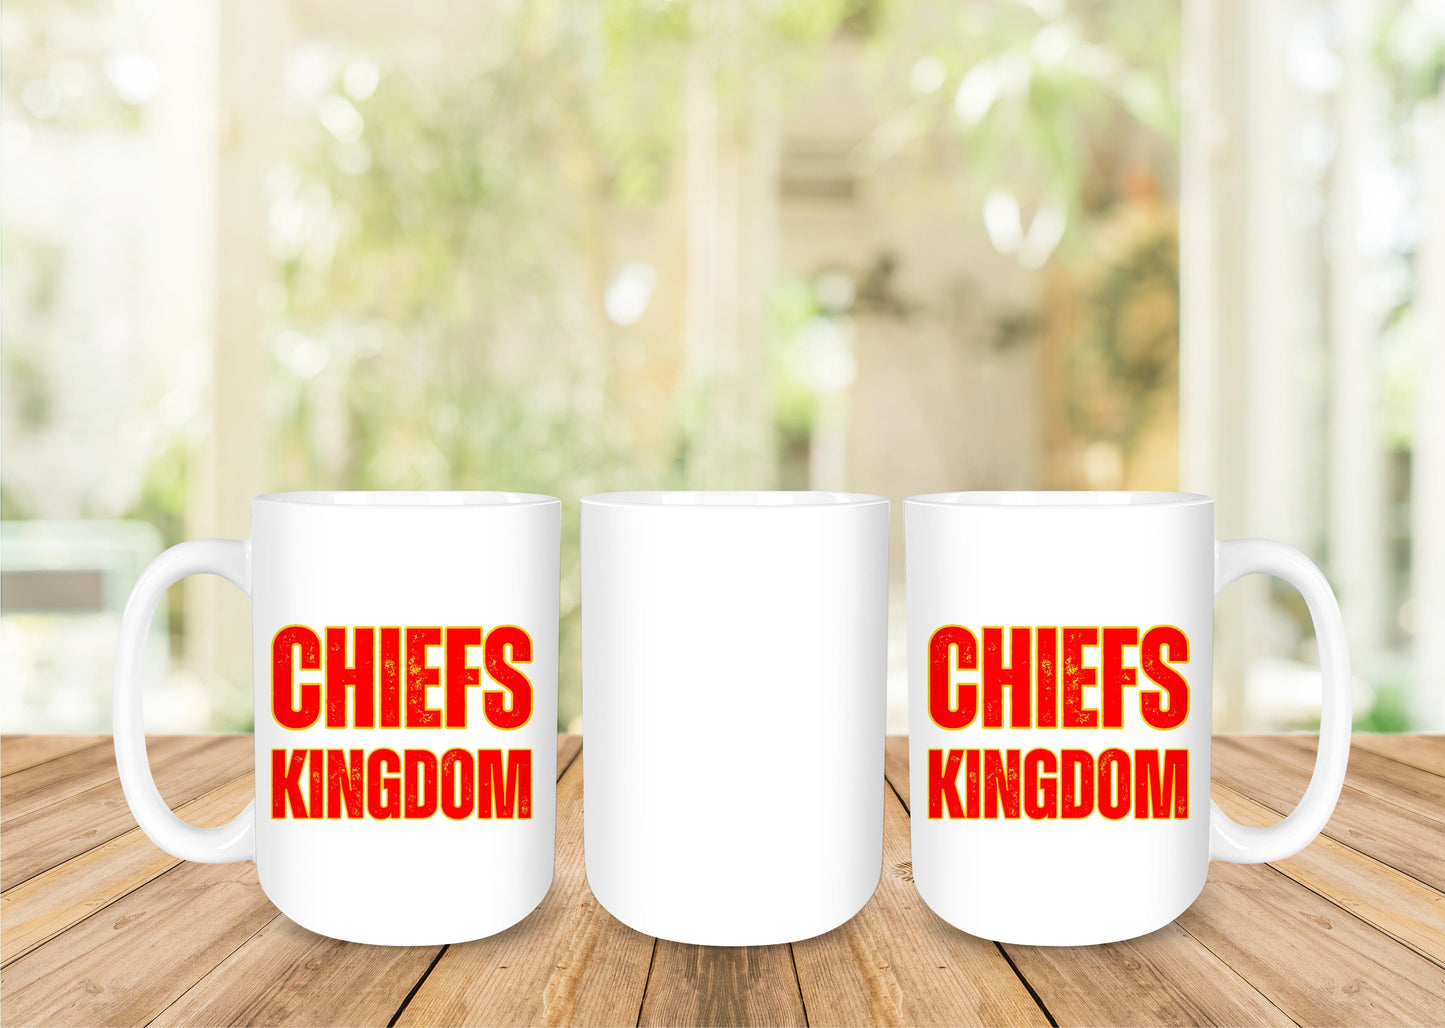 Kansas City Chiefs 15oz Coffee Mug - 4 Designs to Choose From 15oz Coffee Mug Graphic Avenue Chiefs Kingdom 